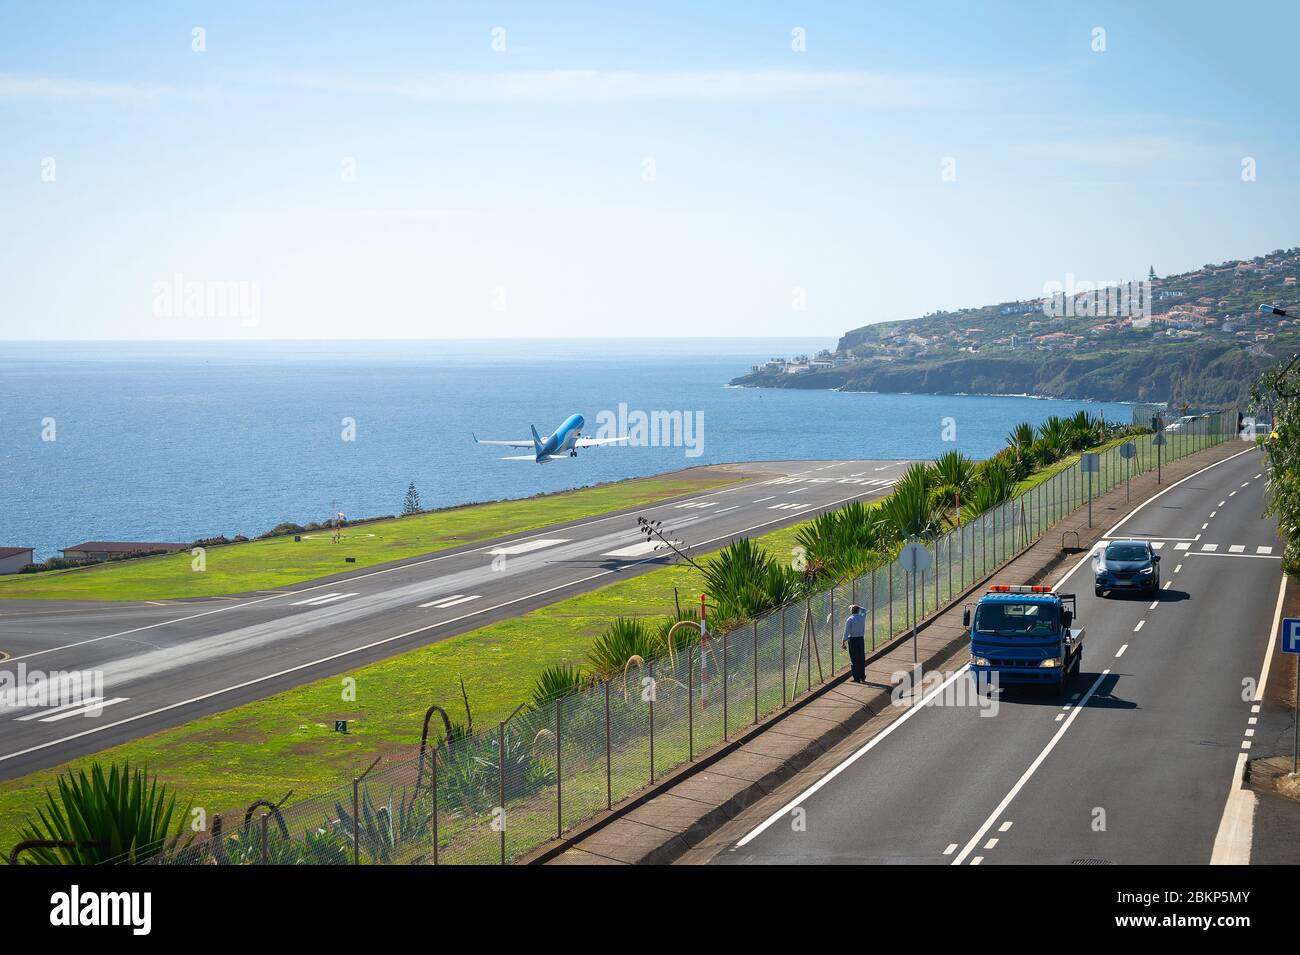 Hombre mirando el avión tomando de la pista de aterrizaje del aeropuerto internacional de Funchal, vista escénica del océano y paisaje urbano en el fondo, coches en la autopista, Madeira, Foto de stock